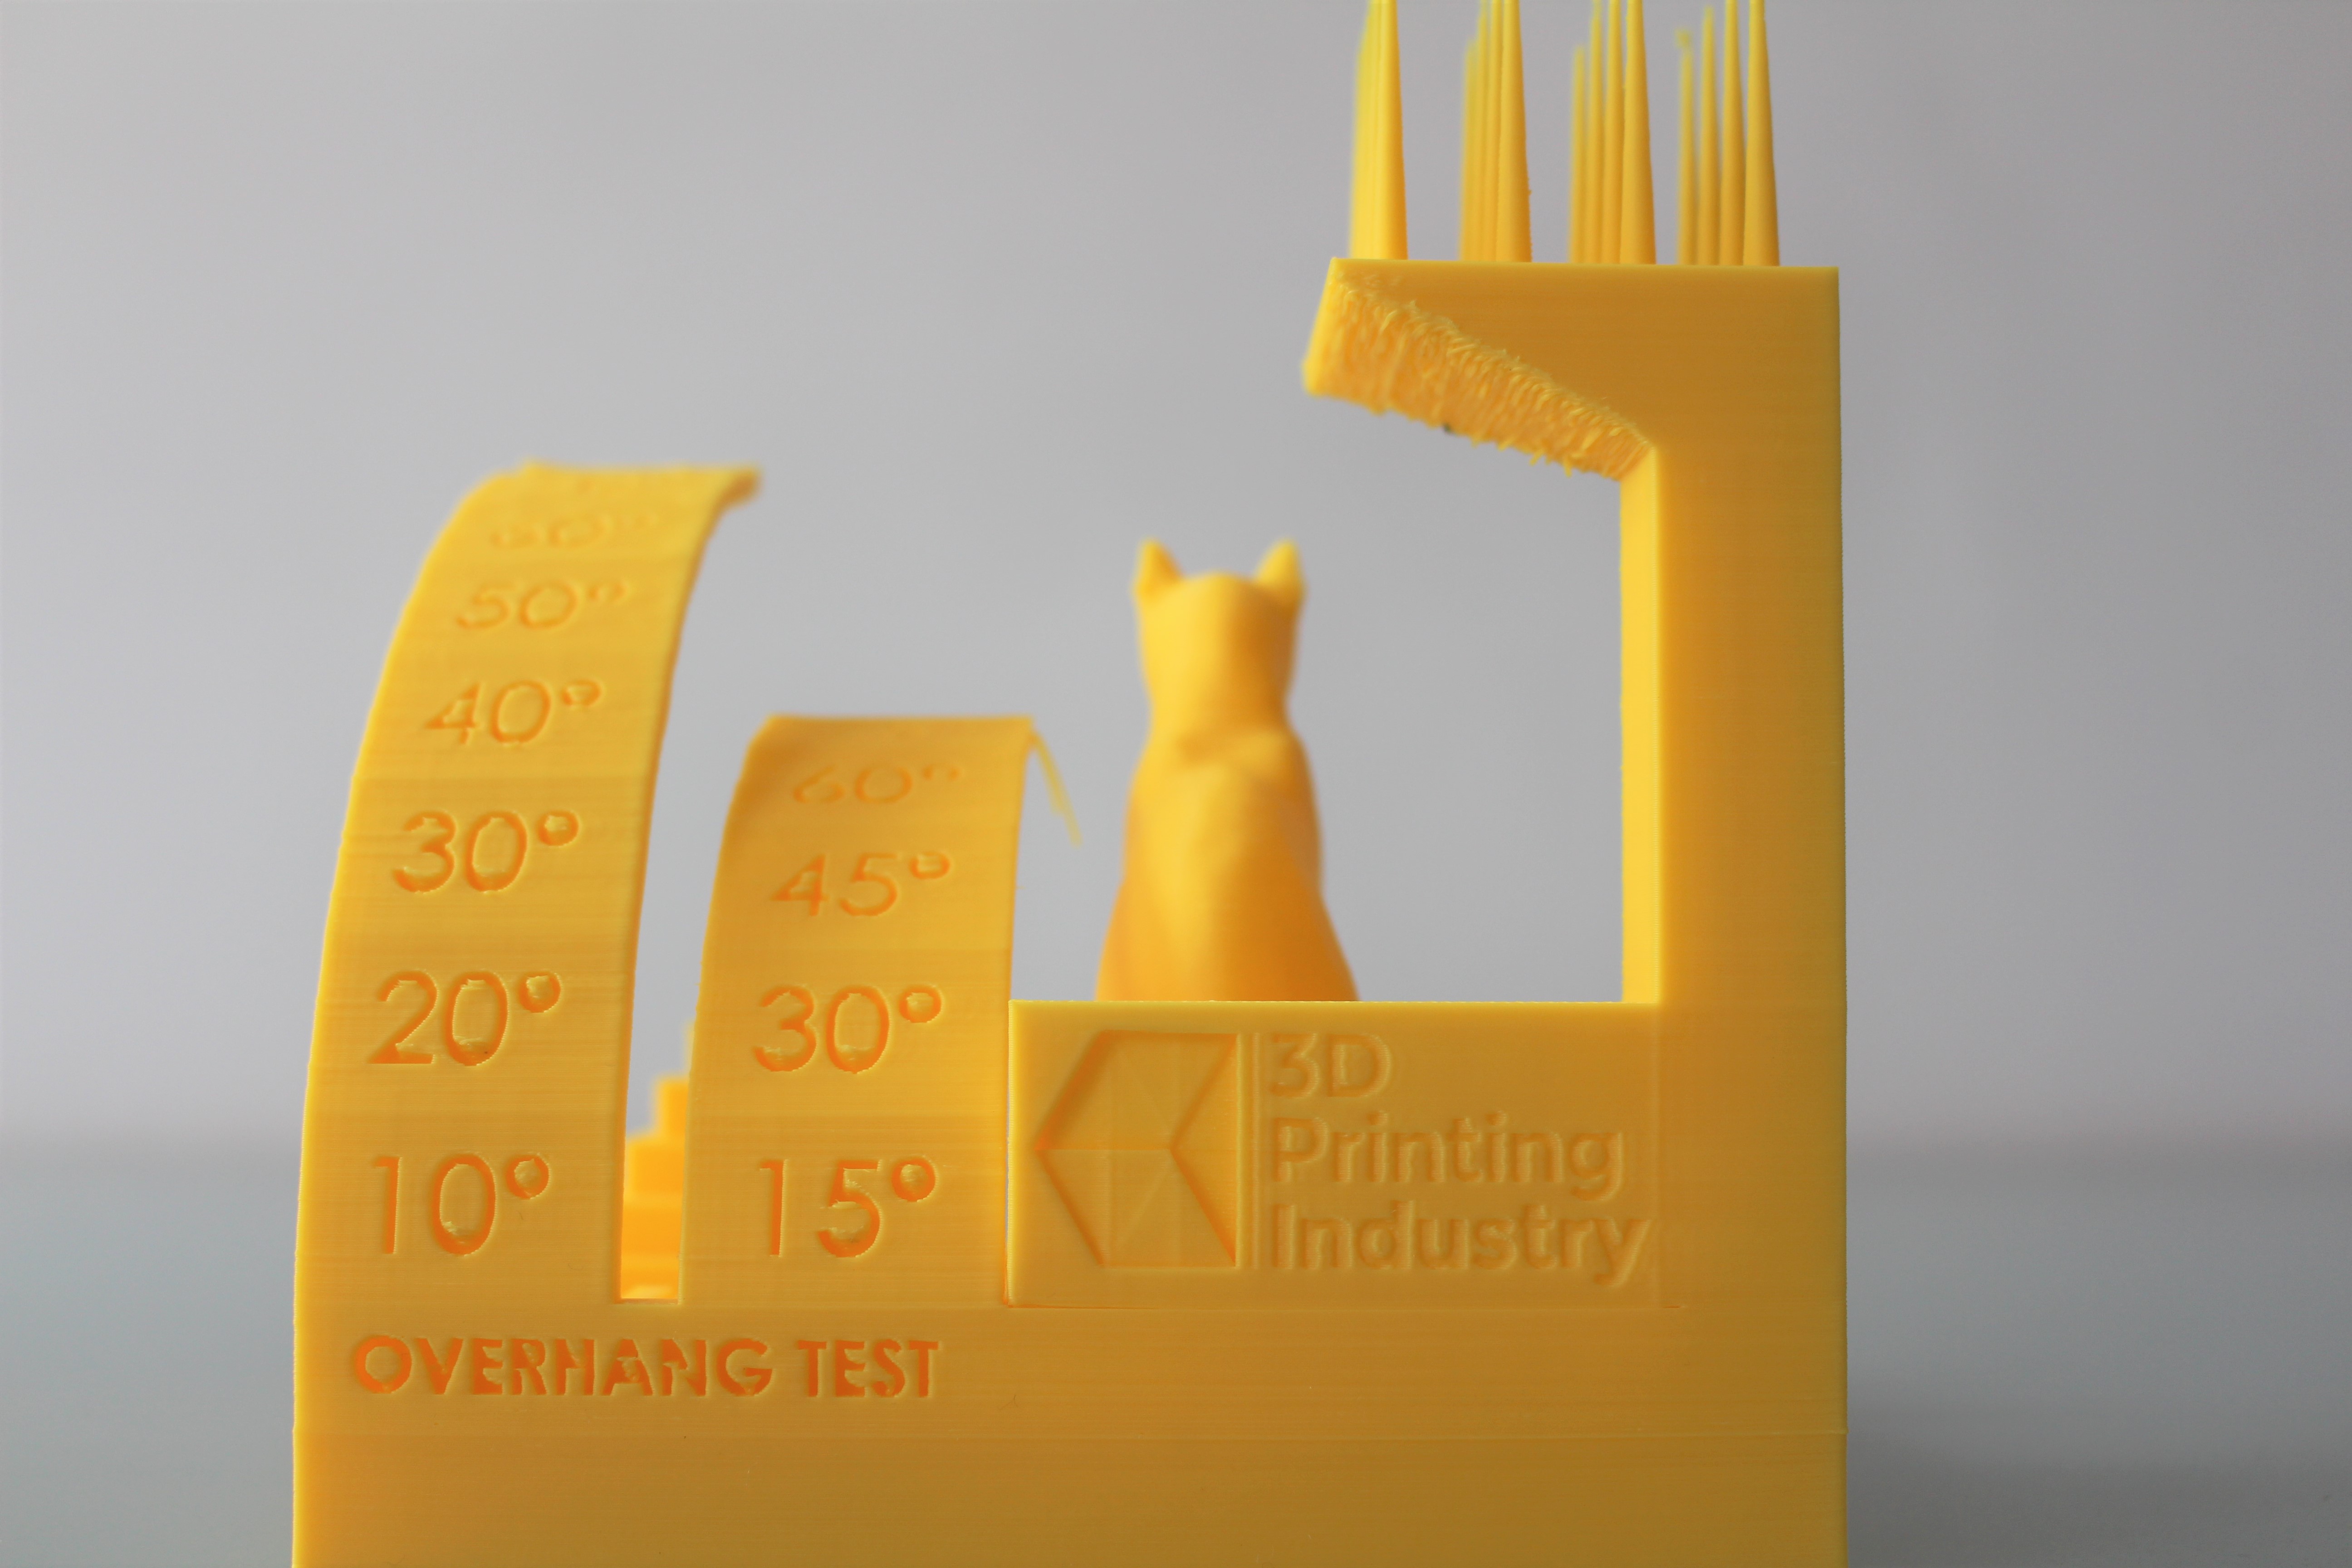 悬垂和收缩测试部分。由3D打印行业拍摄。